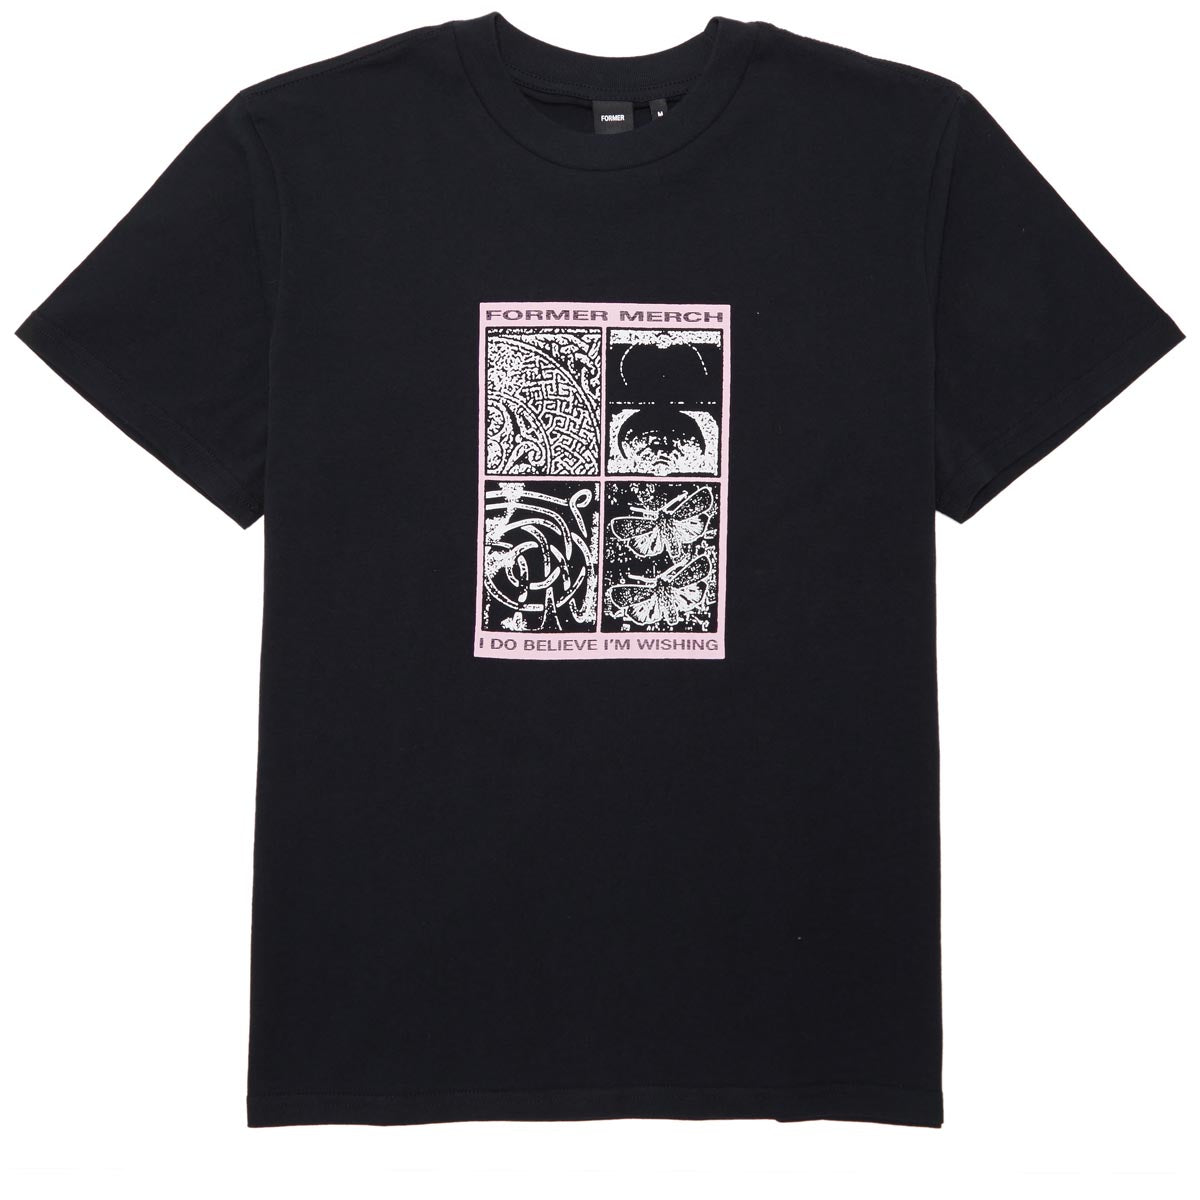 Former Knot T-Shirt - Black image 1